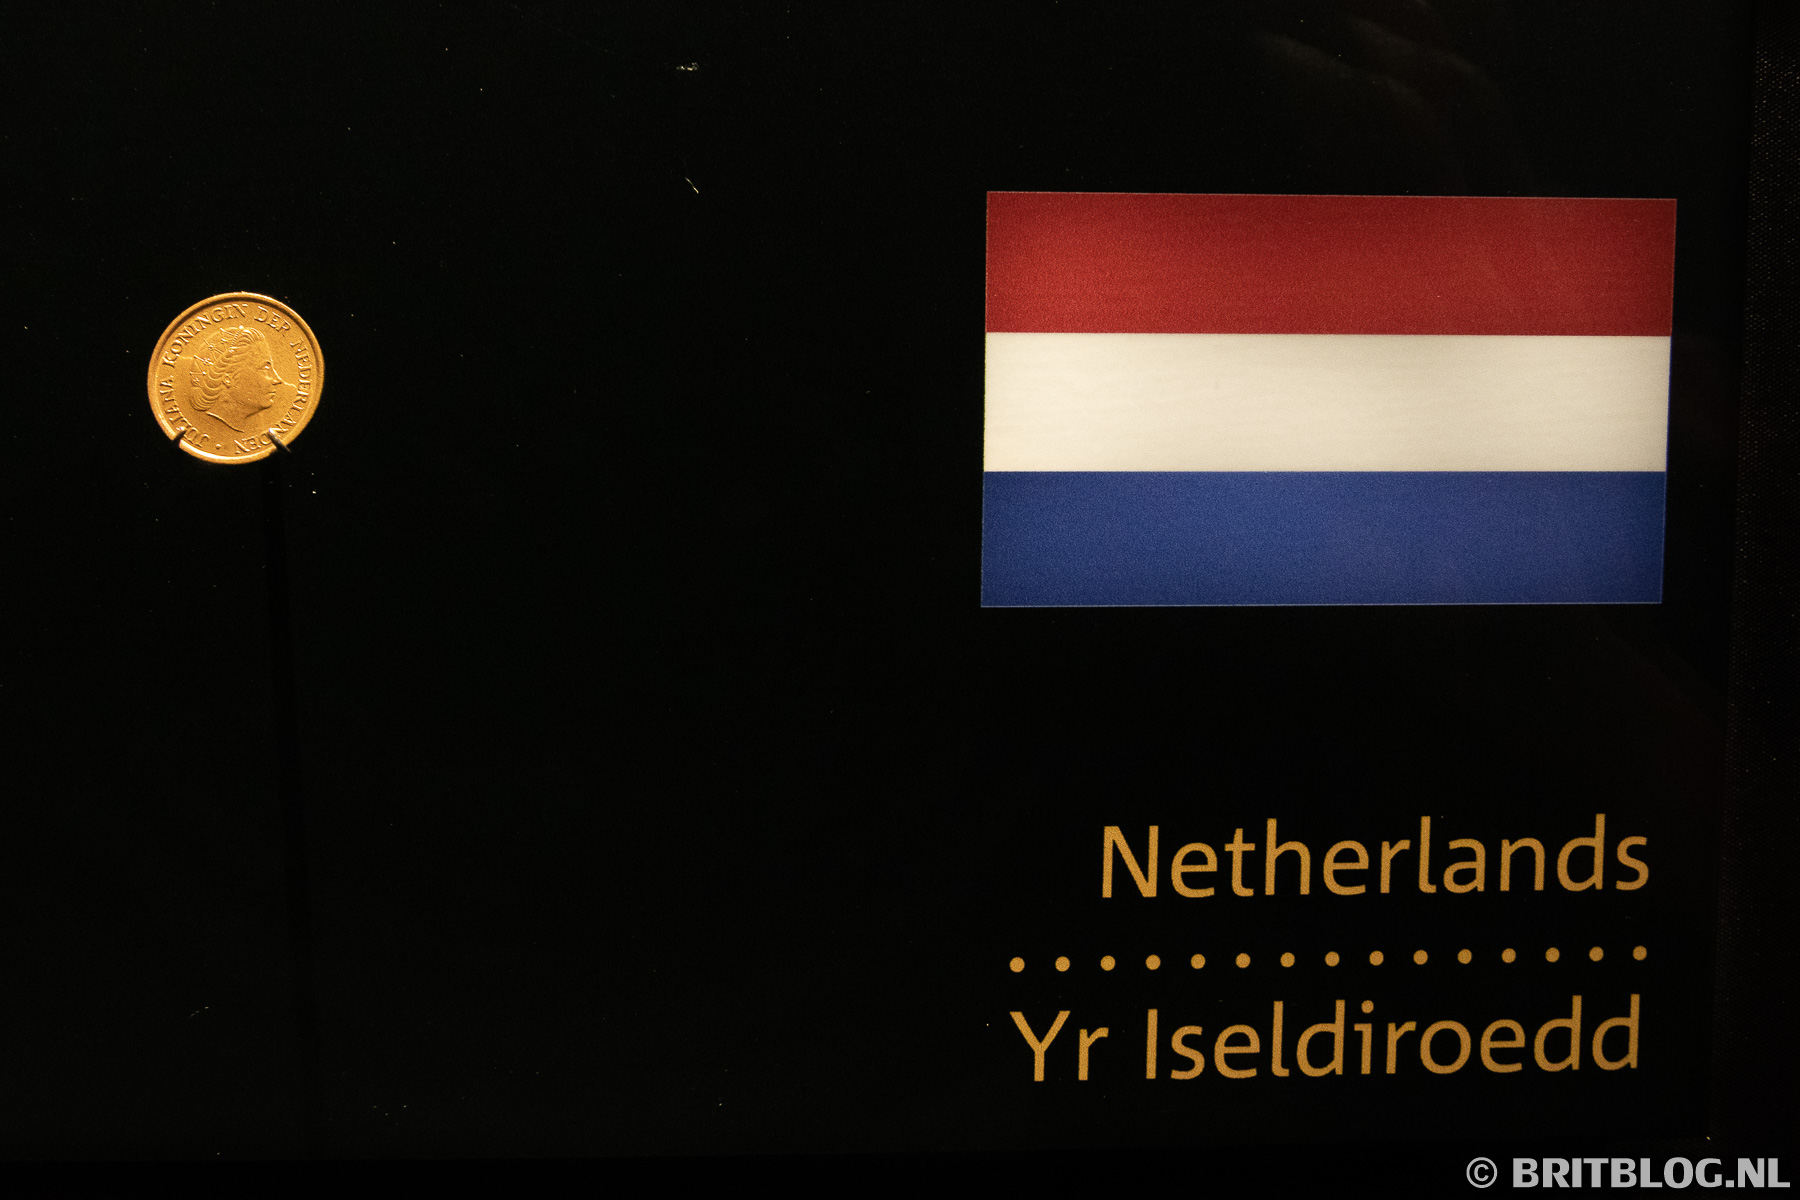 Nederlandse munt, geproduceerd in de UK